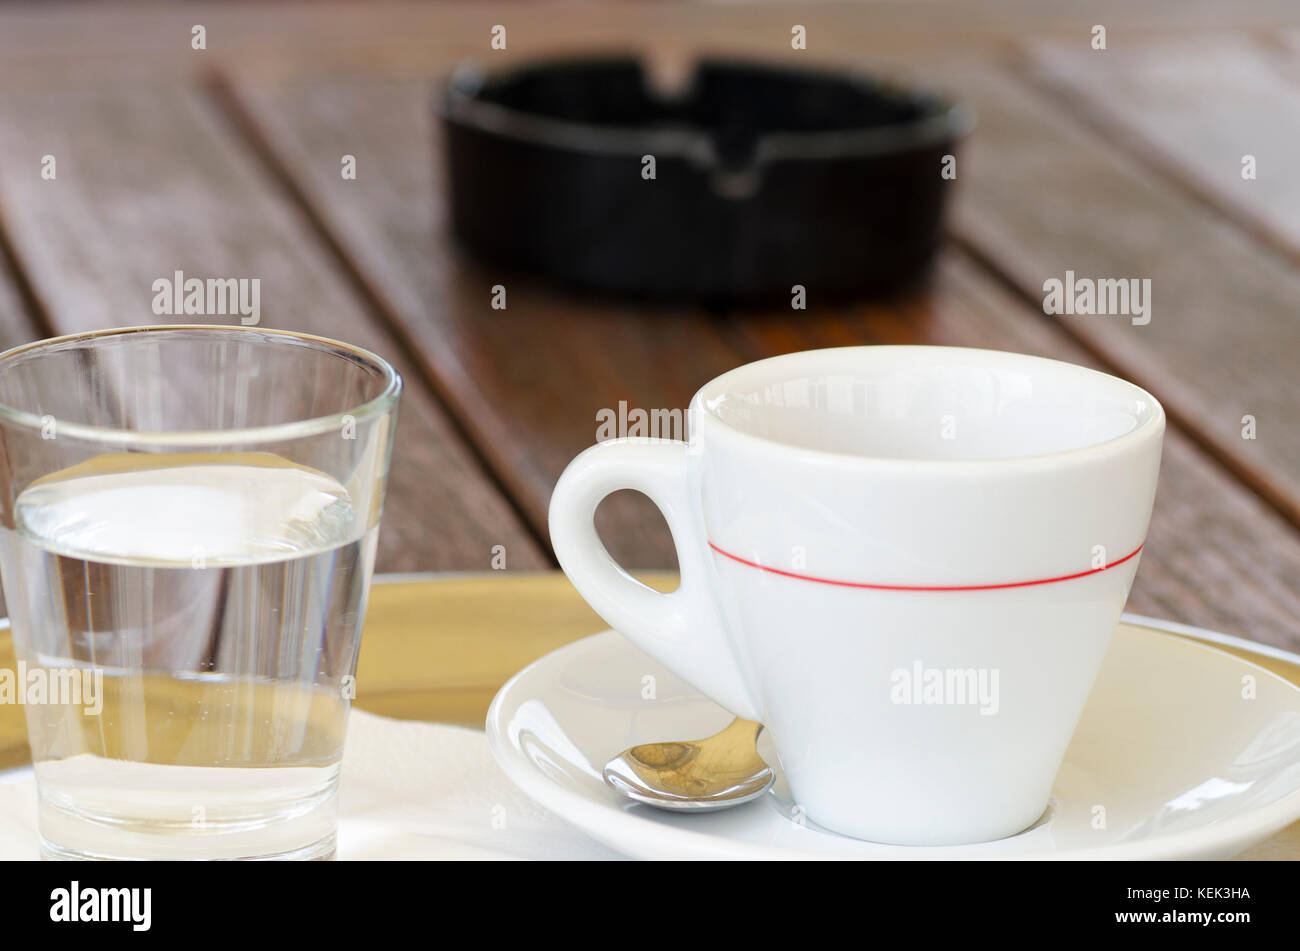 La foto de una taza de café en un plato con una cuchara junto a un vaso de agua y un cenicero con un fondo borroso Foto de stock